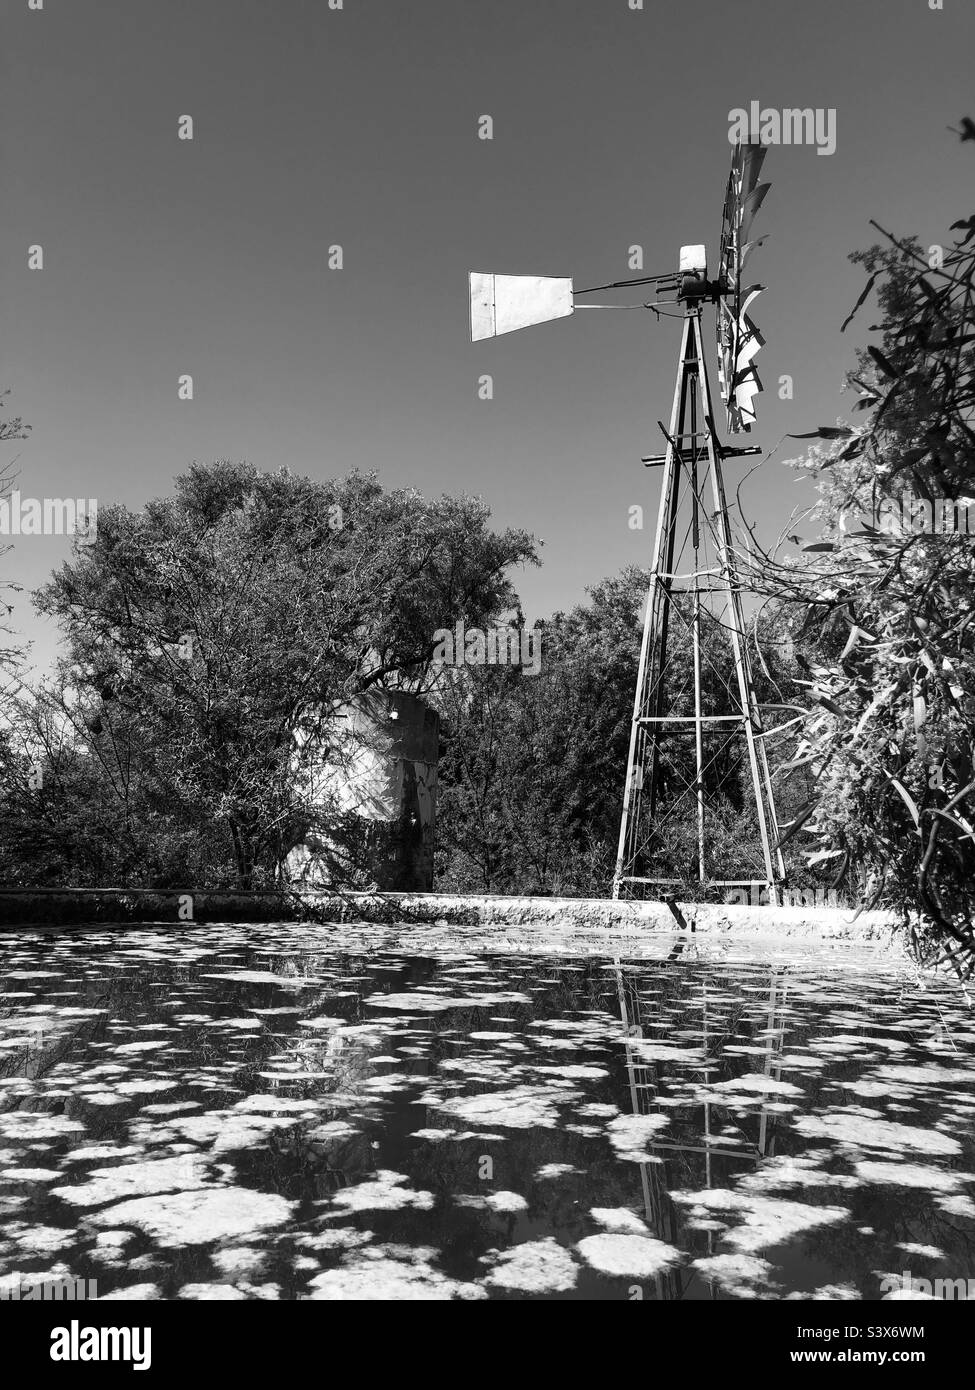 Schwarzweiß erzählt eine andere Geschichte. Diese Windmühle wartet geduldig auf den Wind, während der Damm auf eine Auffüllen wartet, aber bis jetzt mit seinem Wasserstand und dem wachsenden Pilz zufrieden ist. Keine Windtage. Stockfoto